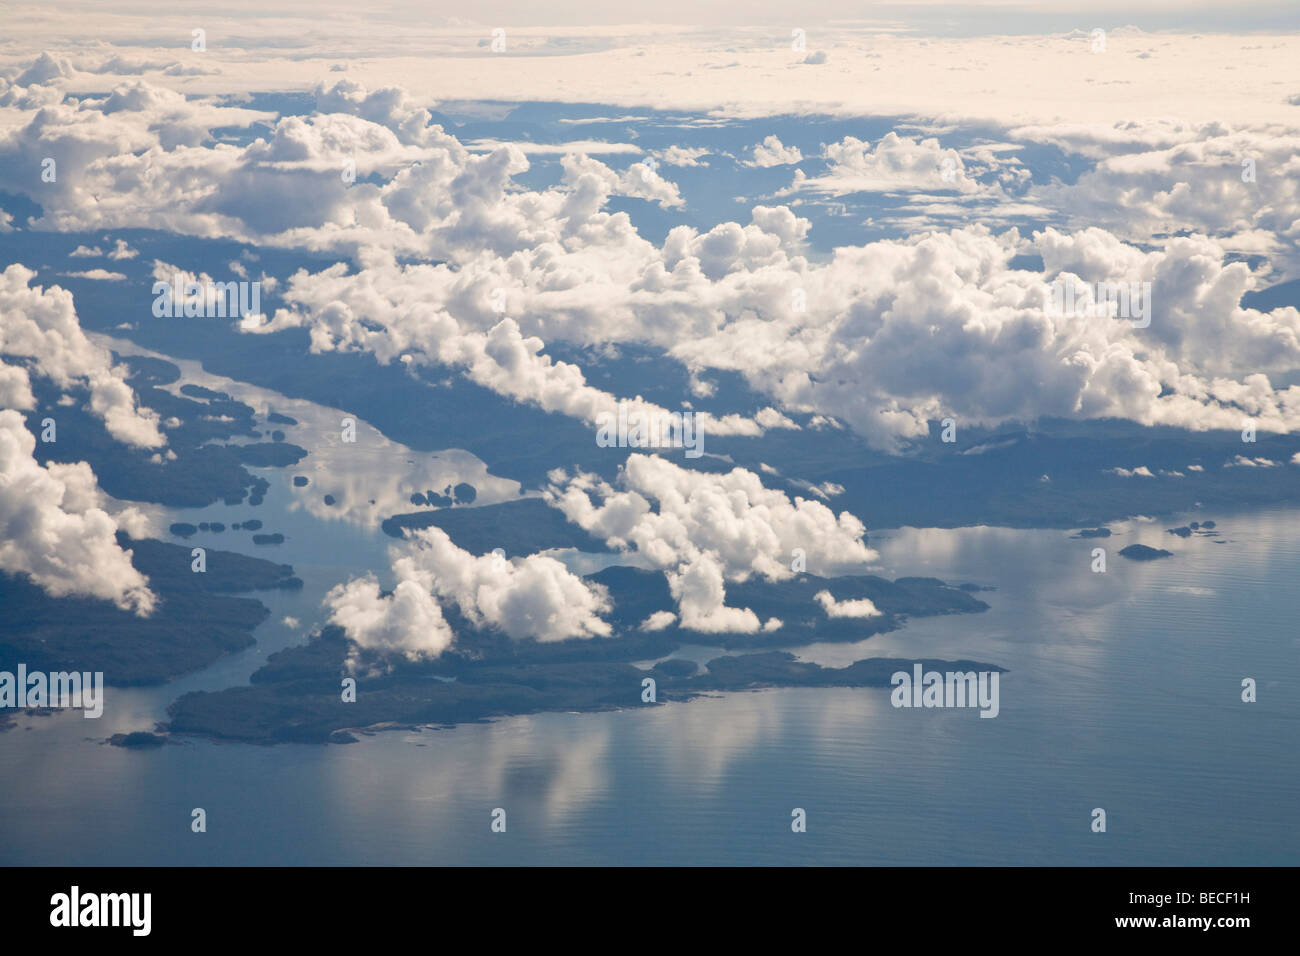 Vista aerea, nuvole, all'interno del passaggio vicino a Ketchikan, a sud-est di Alaska, Alaska, Stati Uniti d'America, America del Nord Foto Stock